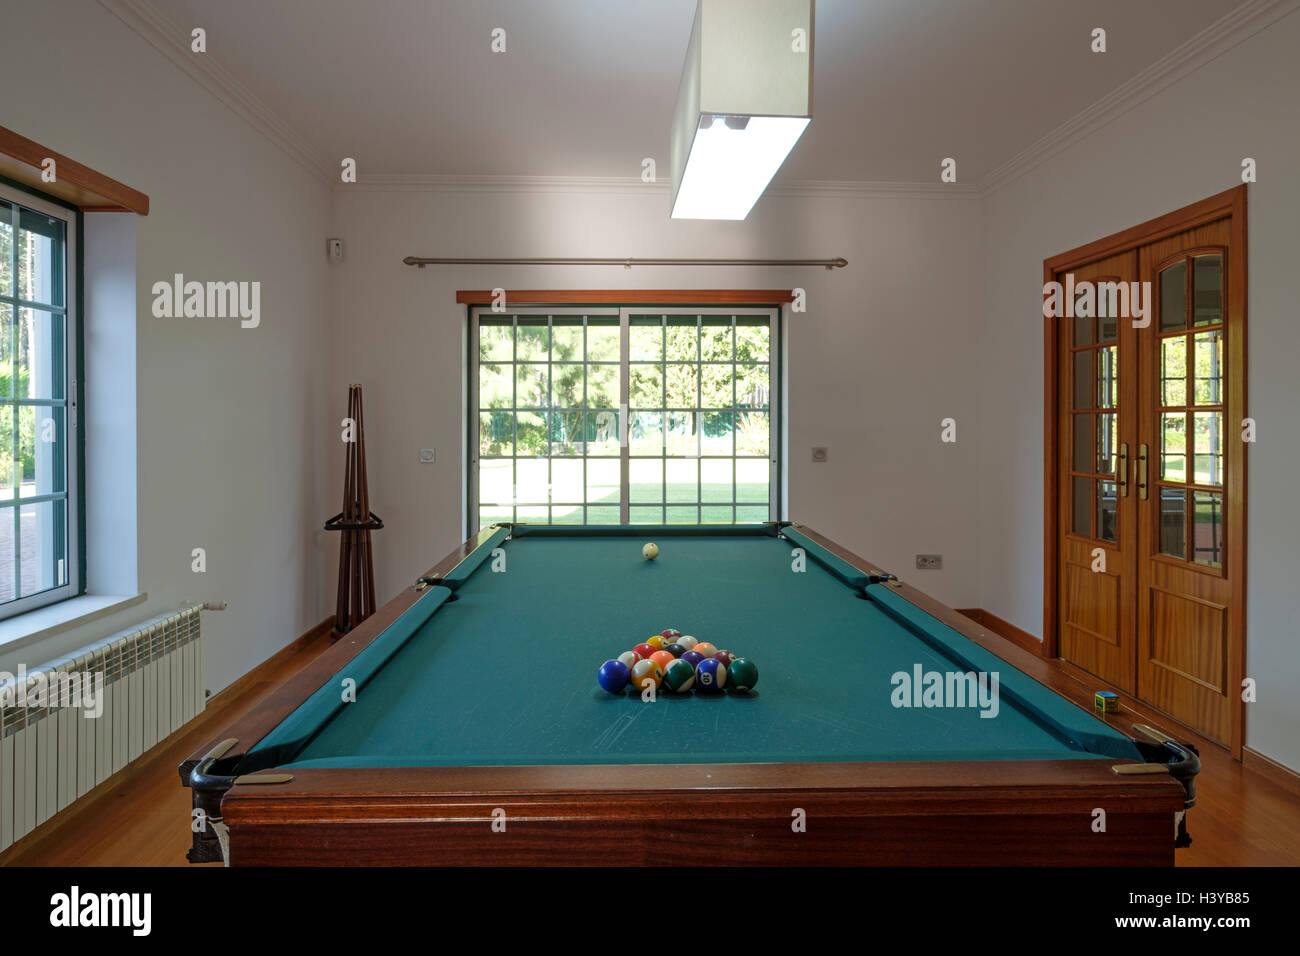 Table de billard dans la salle de jeux à la maison Photo Stock - Alamy